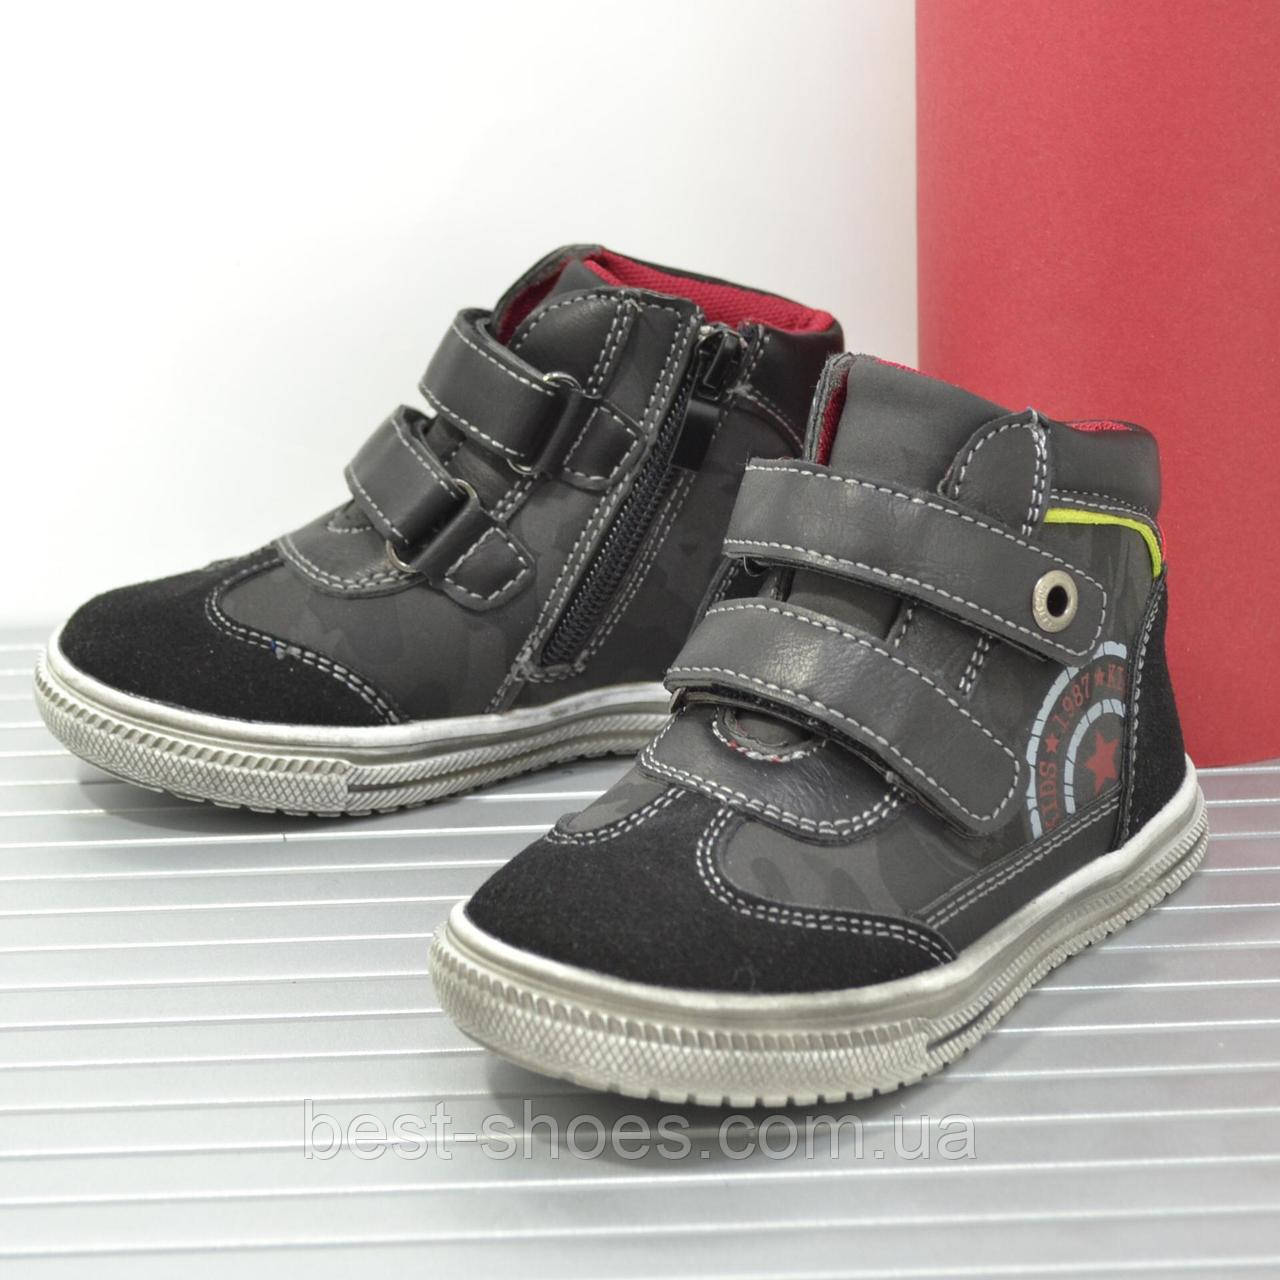 

Демисезонные ботинки детские черные 2 липучки 03-29-92161 (25р - 15,5см, Черный